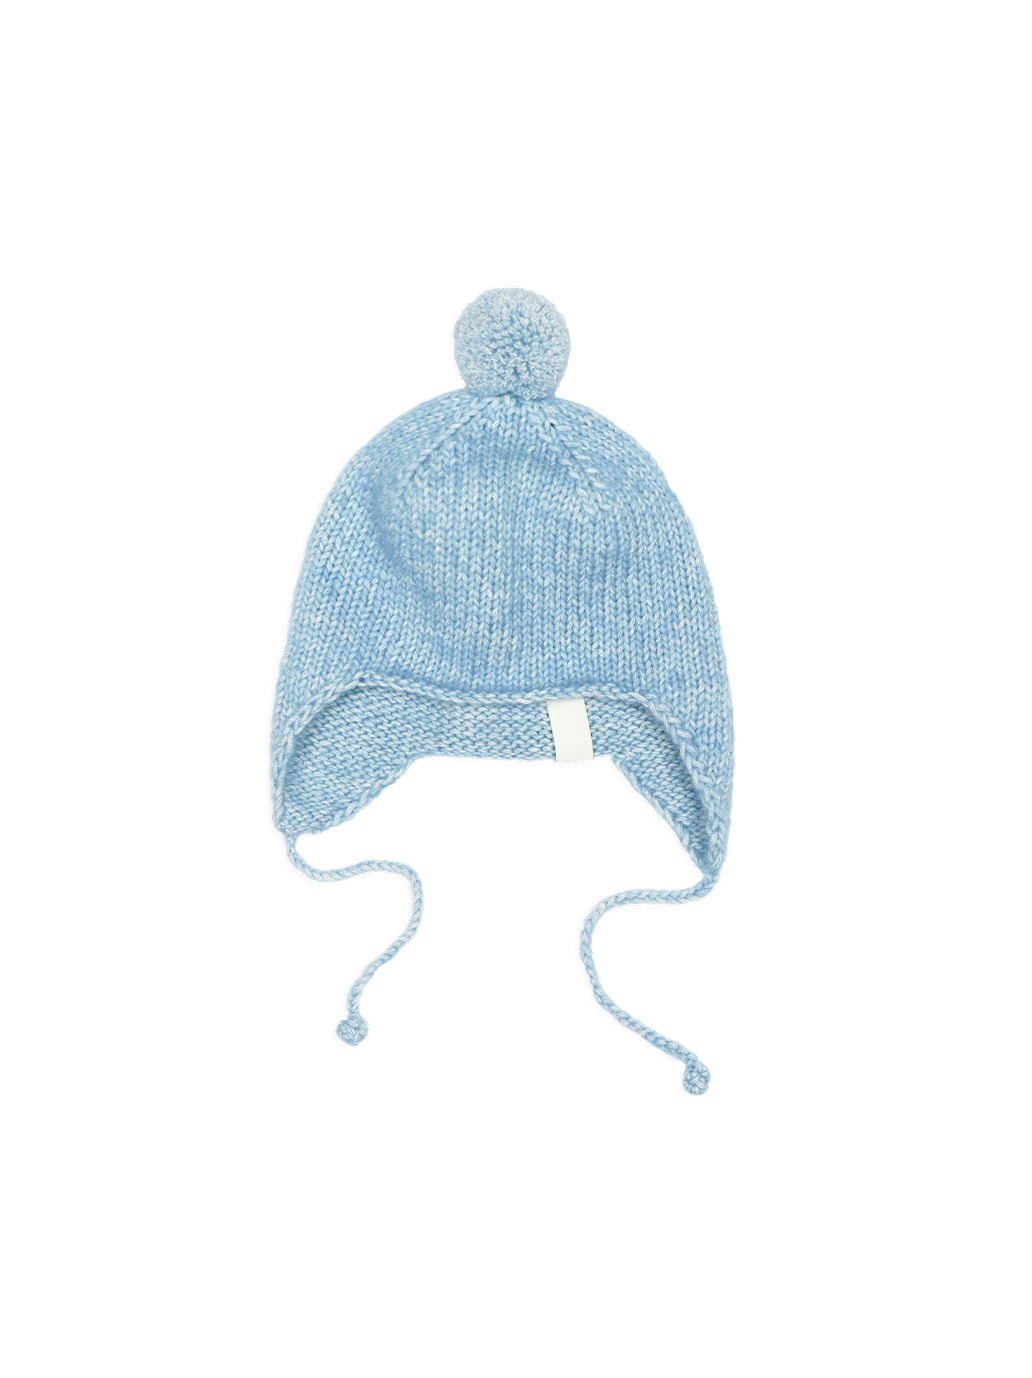 Bonnet bébé en laine mérinos avec pompon